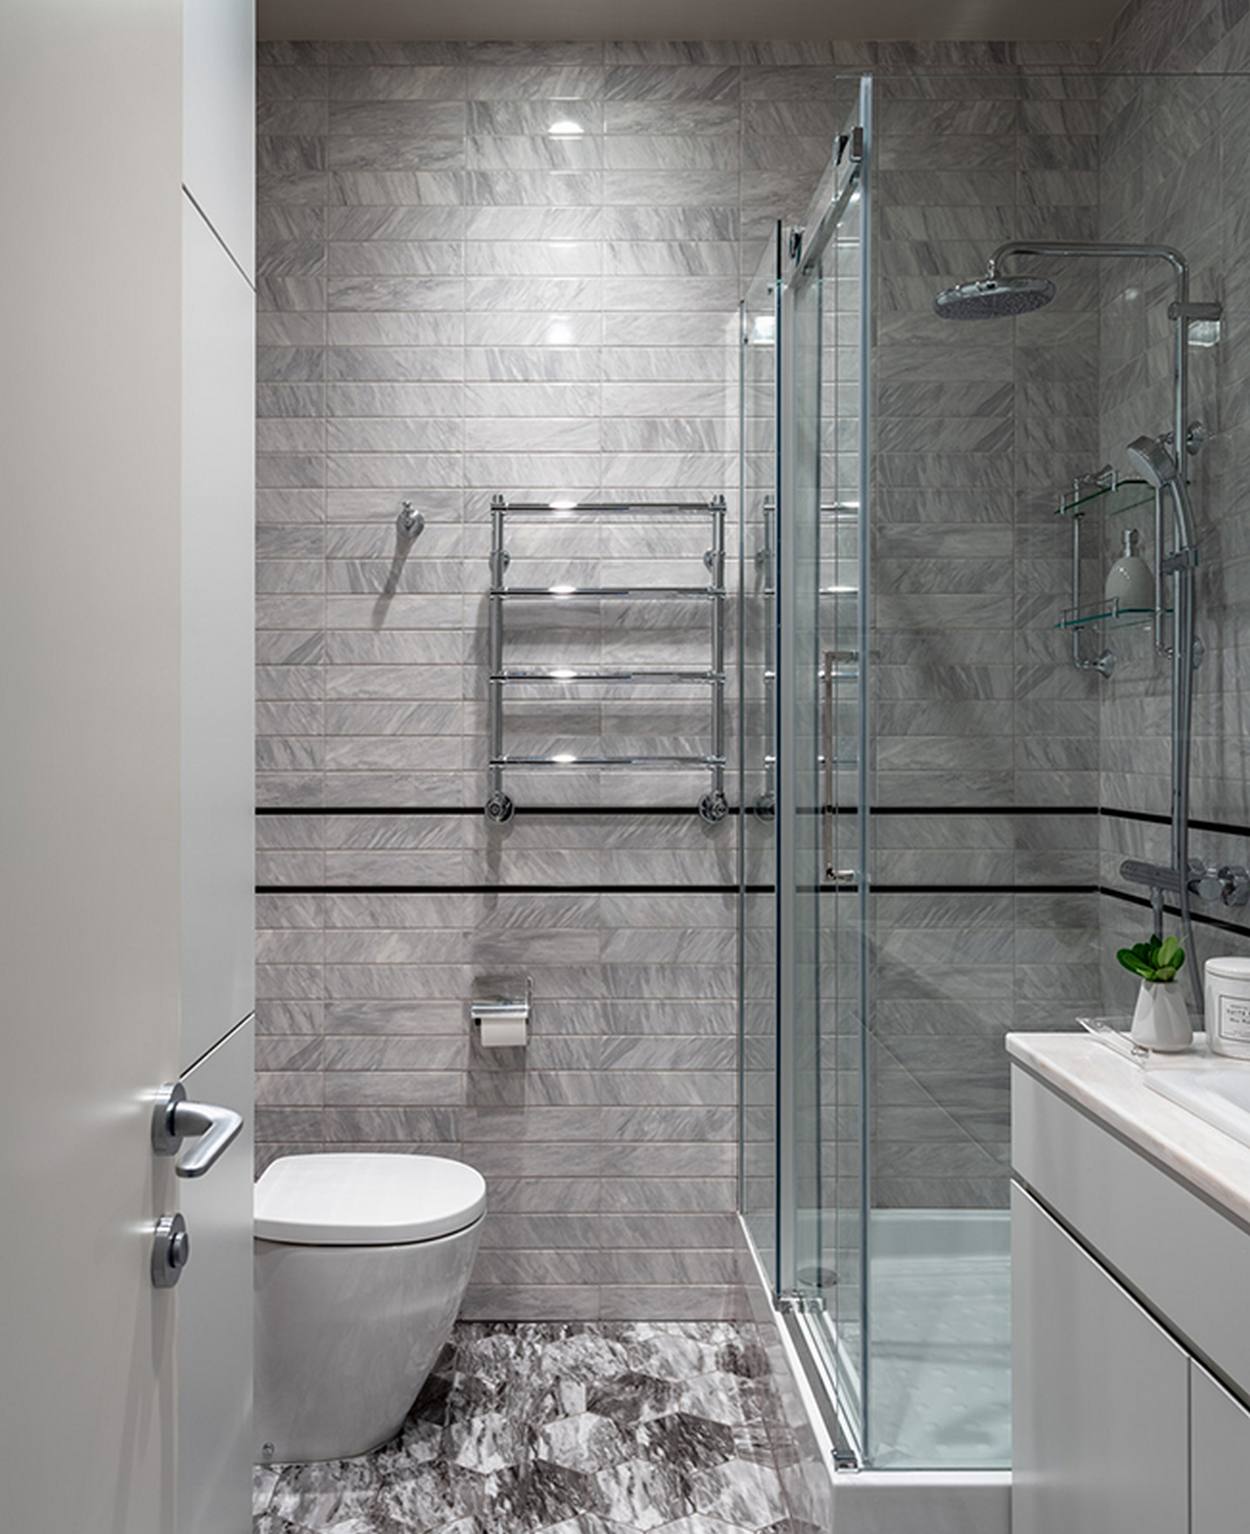 Buồng tắm được thiết kế nâng sàn, đối diện với nhà vệ sinh và được phân vùng bằng cửa kính trong suốt để không gây 'cản trở' thị giác người nhìn. Sàn gạch lục giác gợi nhớ đến khu vực lối vào mà chúng ta tham quan khi vừa đến căn hộ.